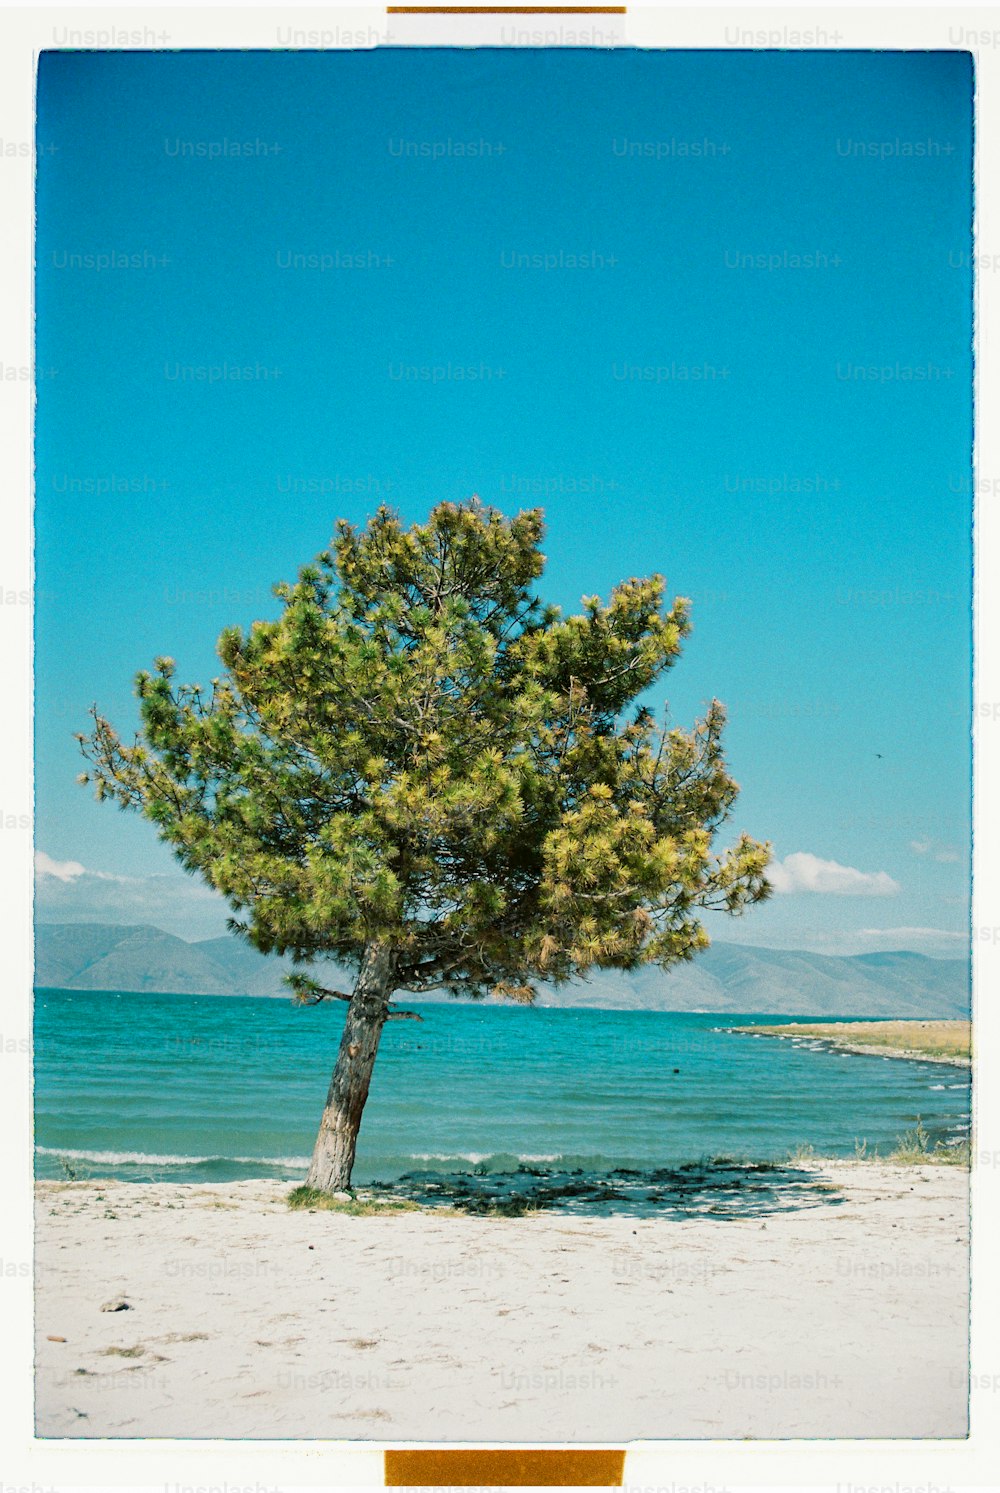 Un arbre solitaire sur une plage avec l’océan en arrière-plan